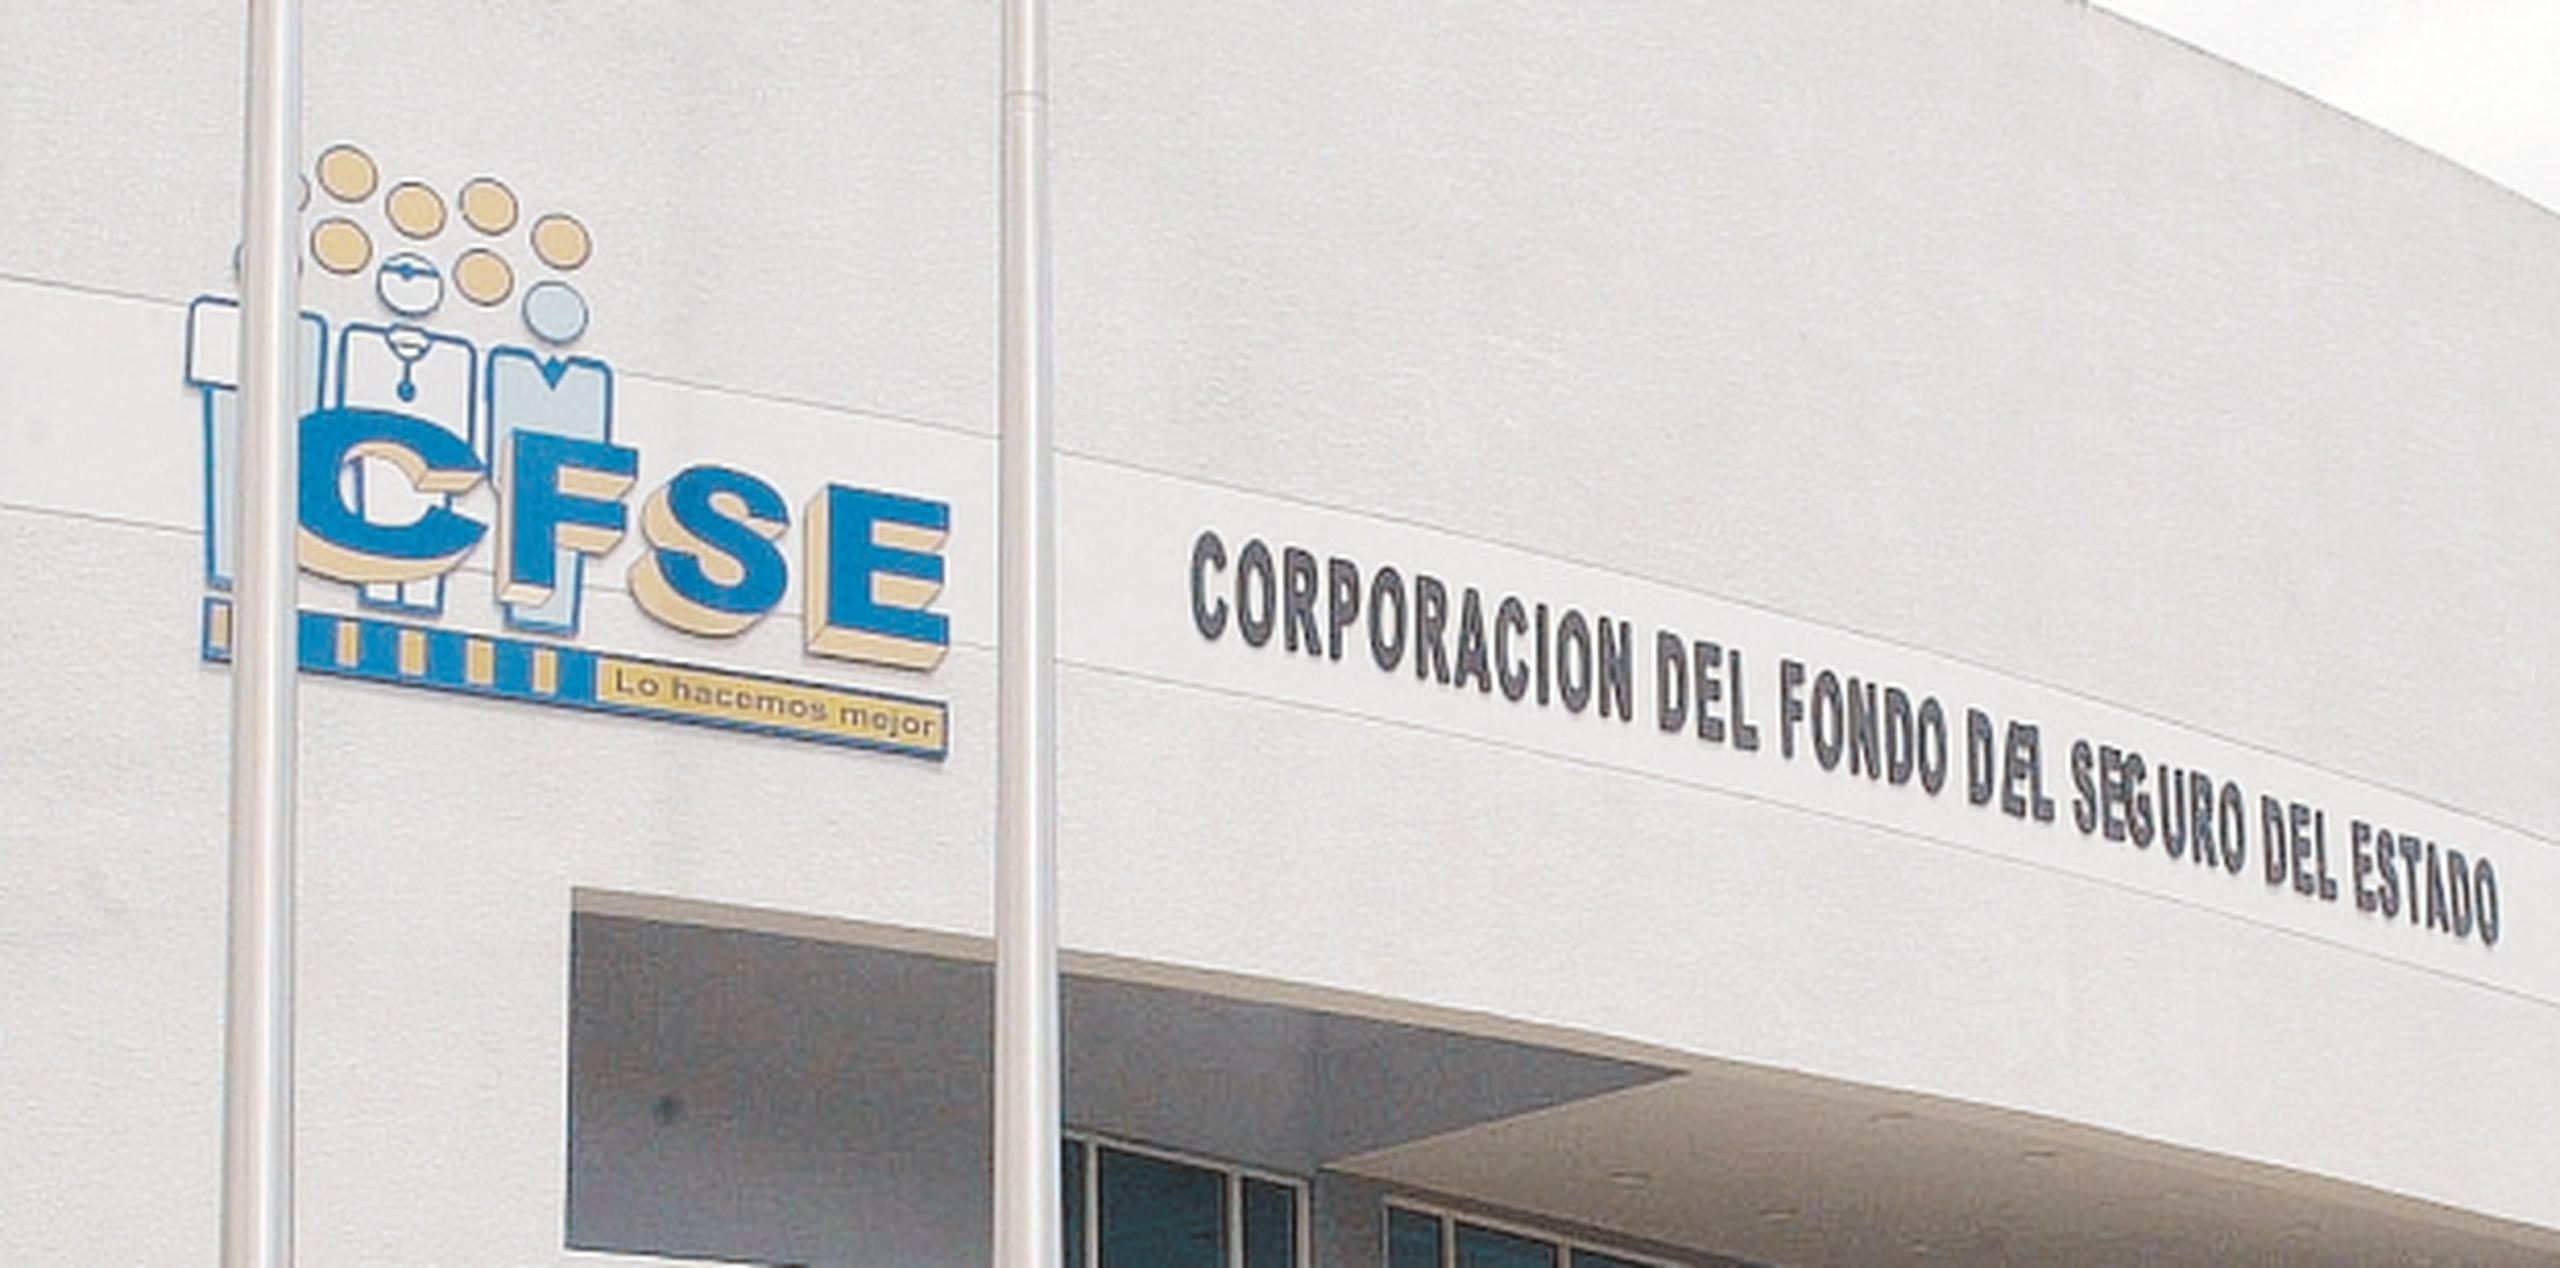 Ortiz Torres lamentó que la decisión provocará hacinamiento de cientos de empleados en otras instalaciones de la agencia. (Archivo)